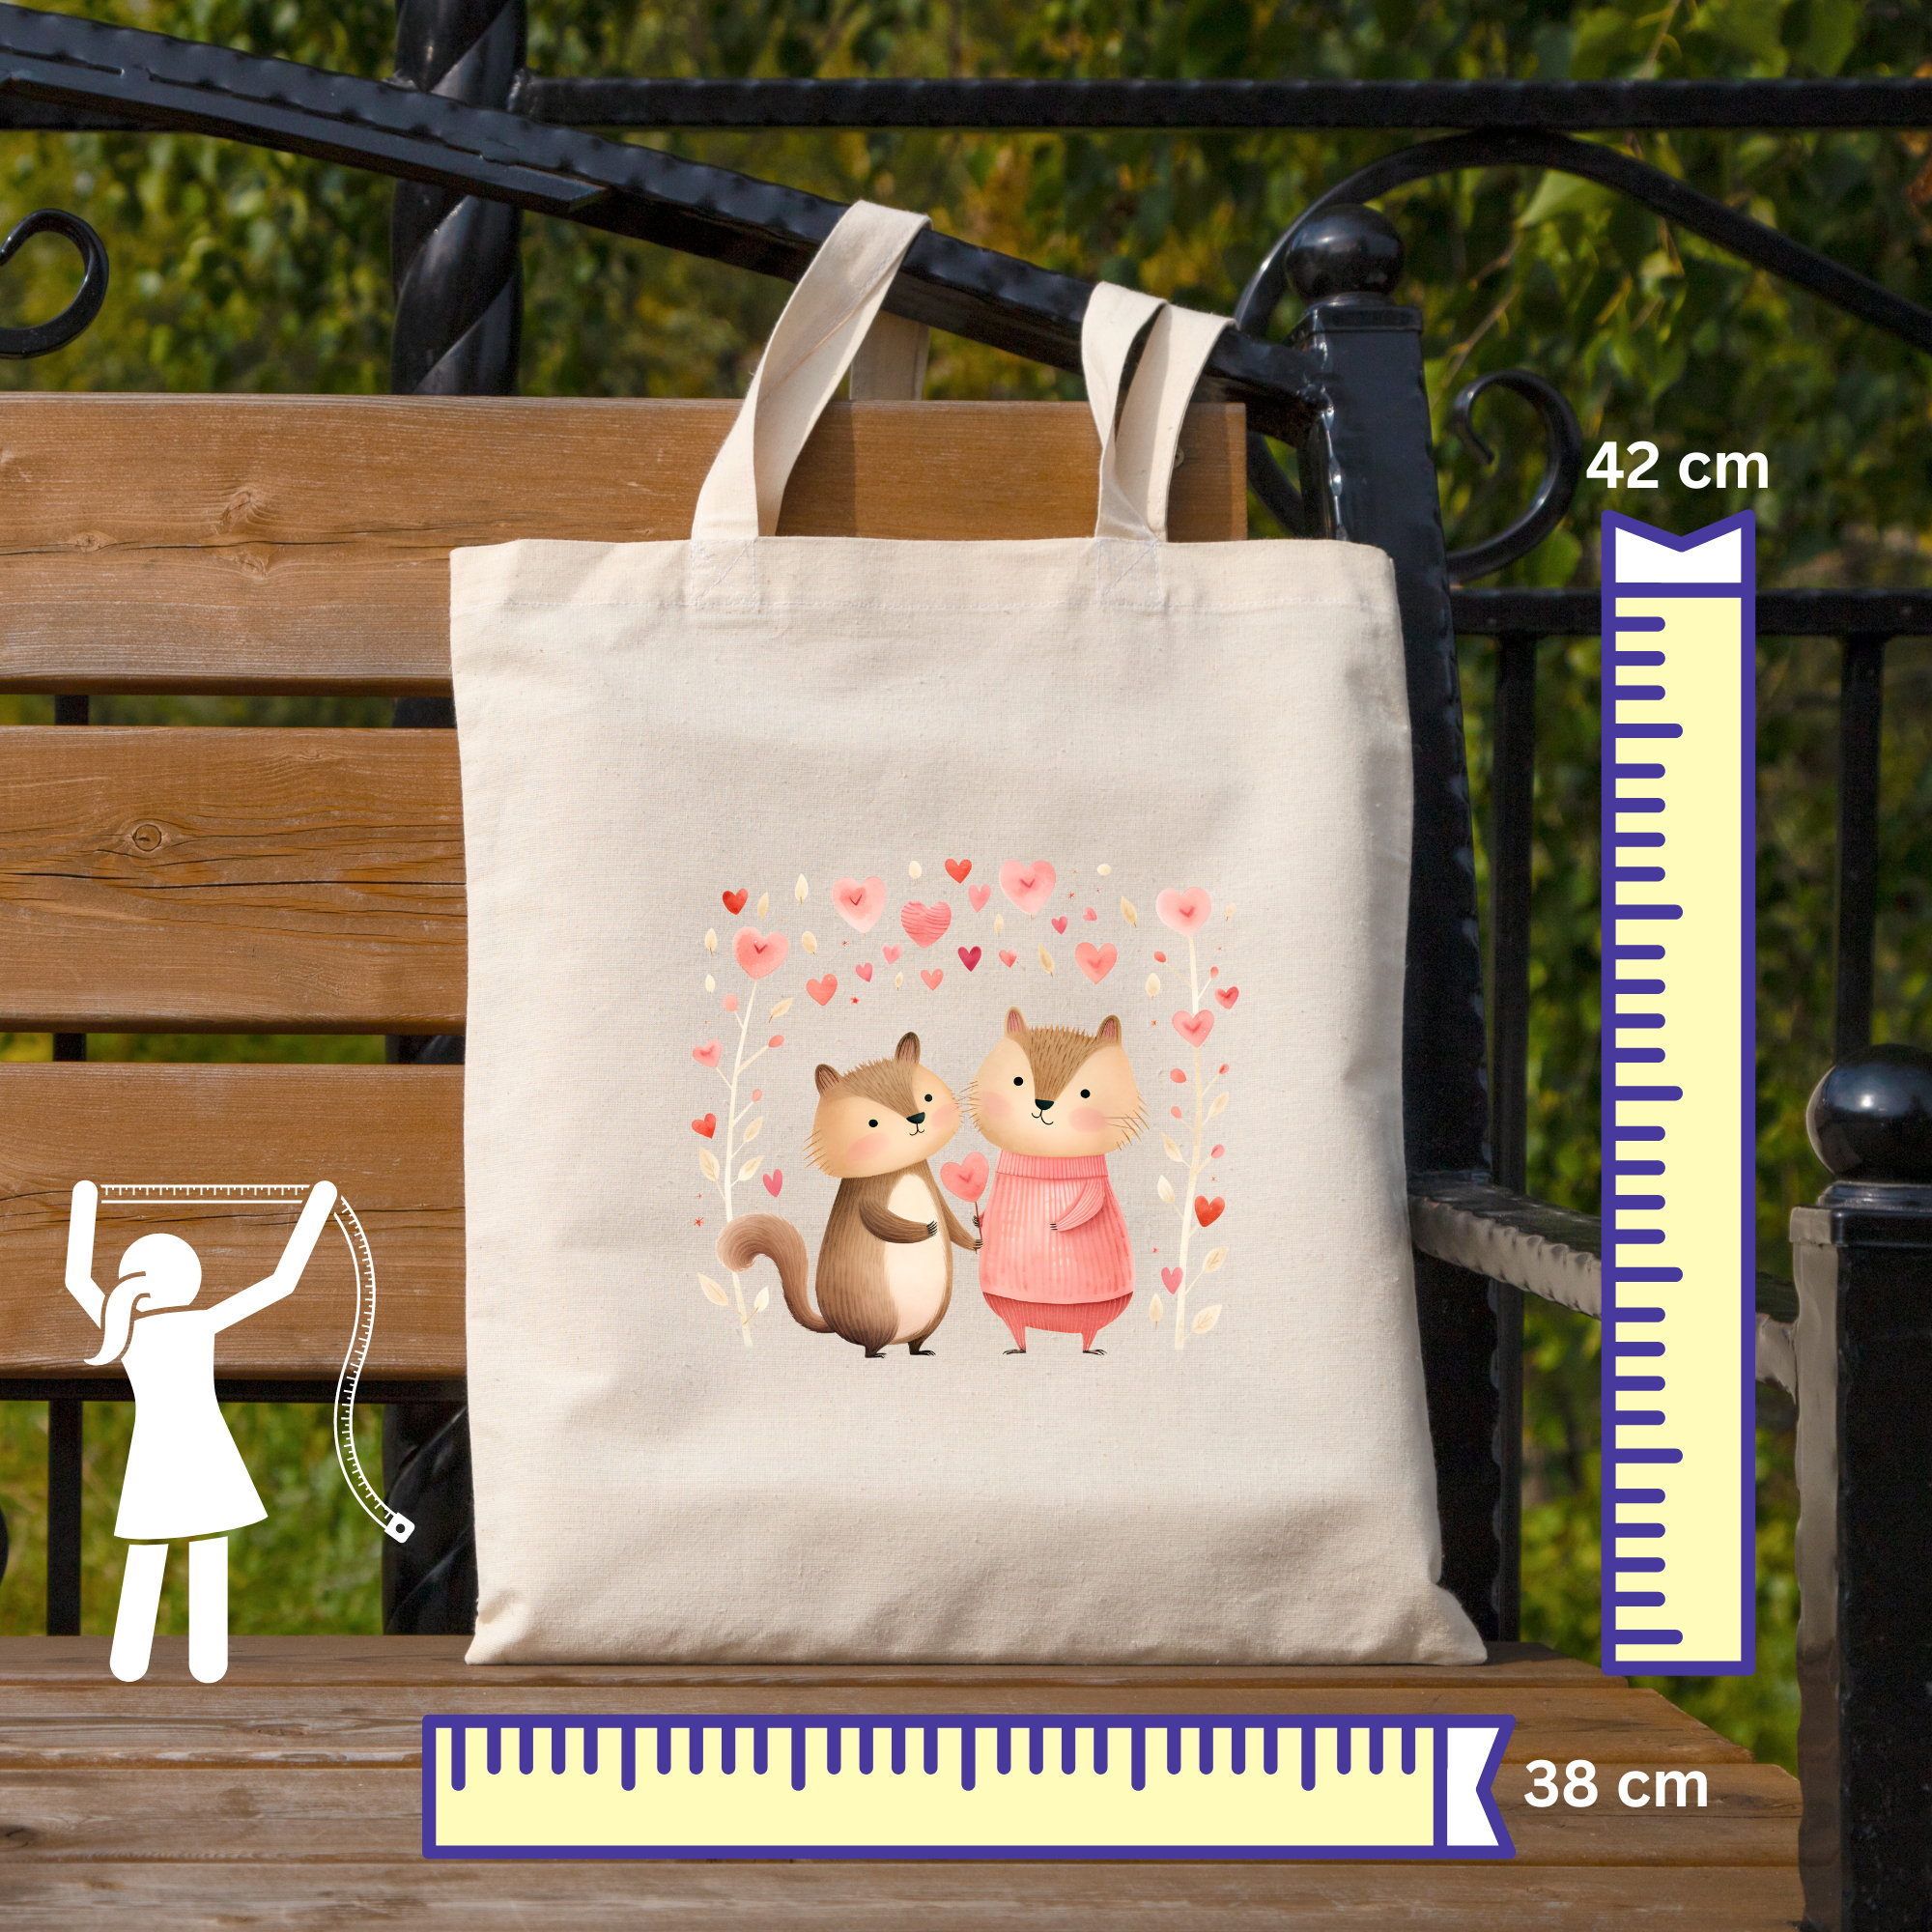 Stofftasche Stoffbeutel " Cute Couple Love " Einkaufstasche Tasche als Geschenk in Weiß oder Beige